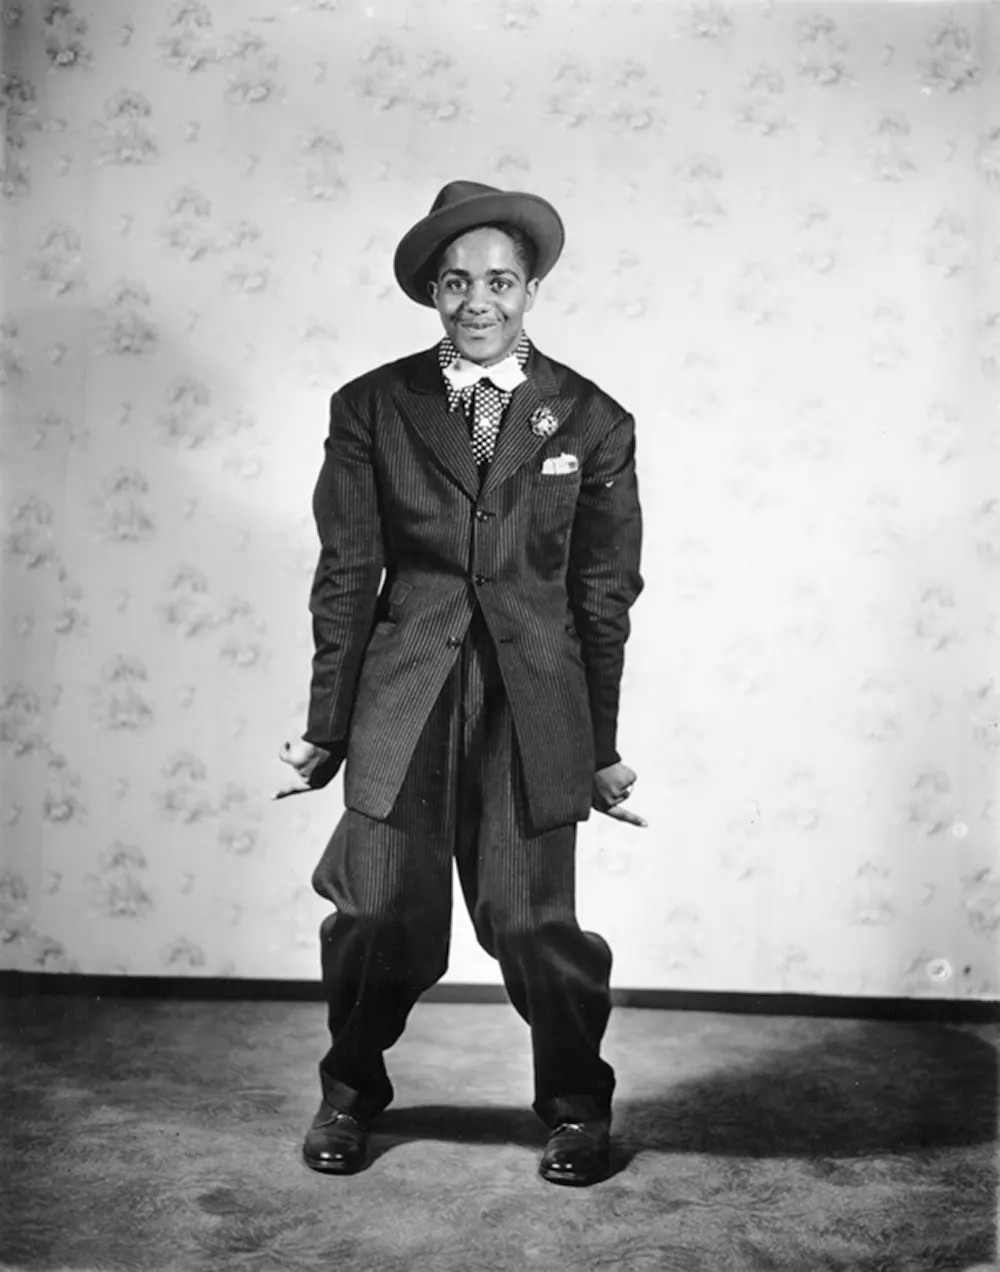 Zoot suit wearer, 1930s.